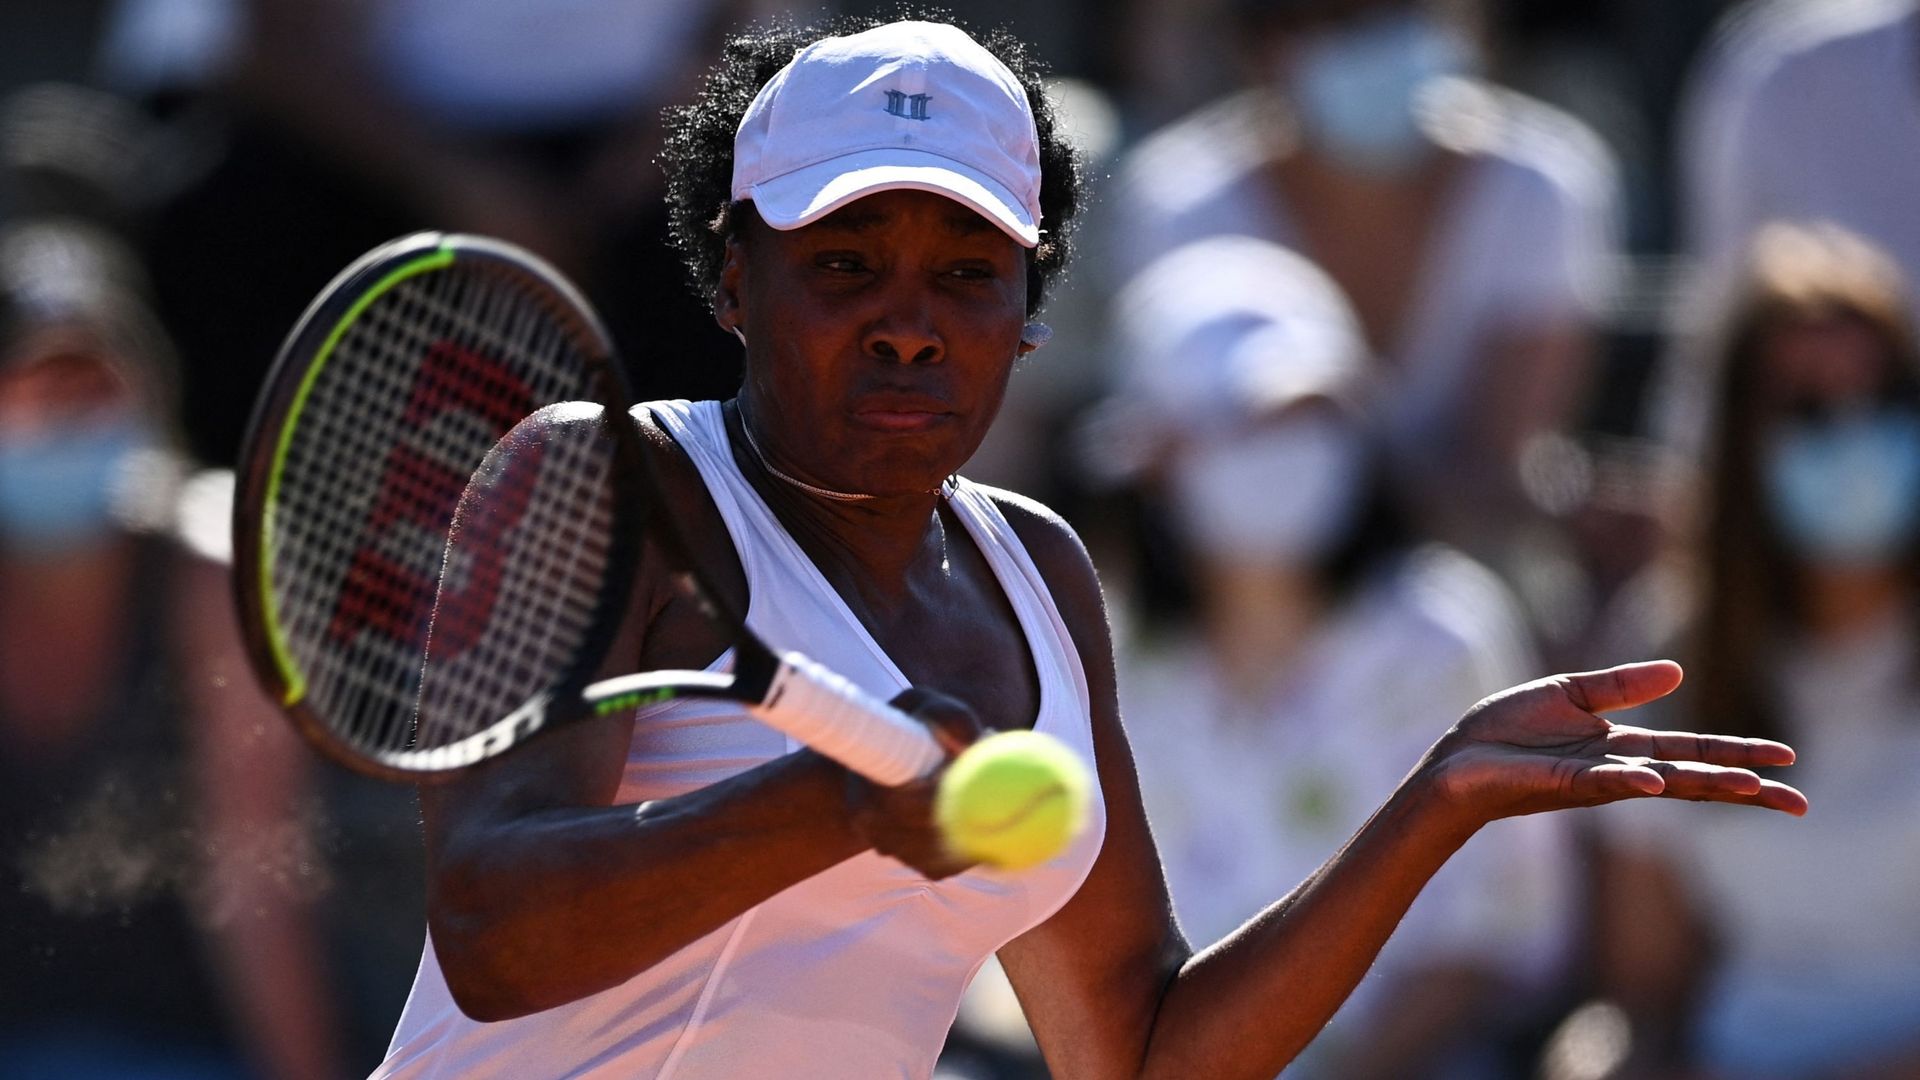 L’Américaine Venus Williams, qui bénéficiait d’une invitation, a finalement annoncé son forfait mercredi en raison d’une blessure, pour l’US Open, quatrième levée du Grand Chelem qui débute lundi à New York.